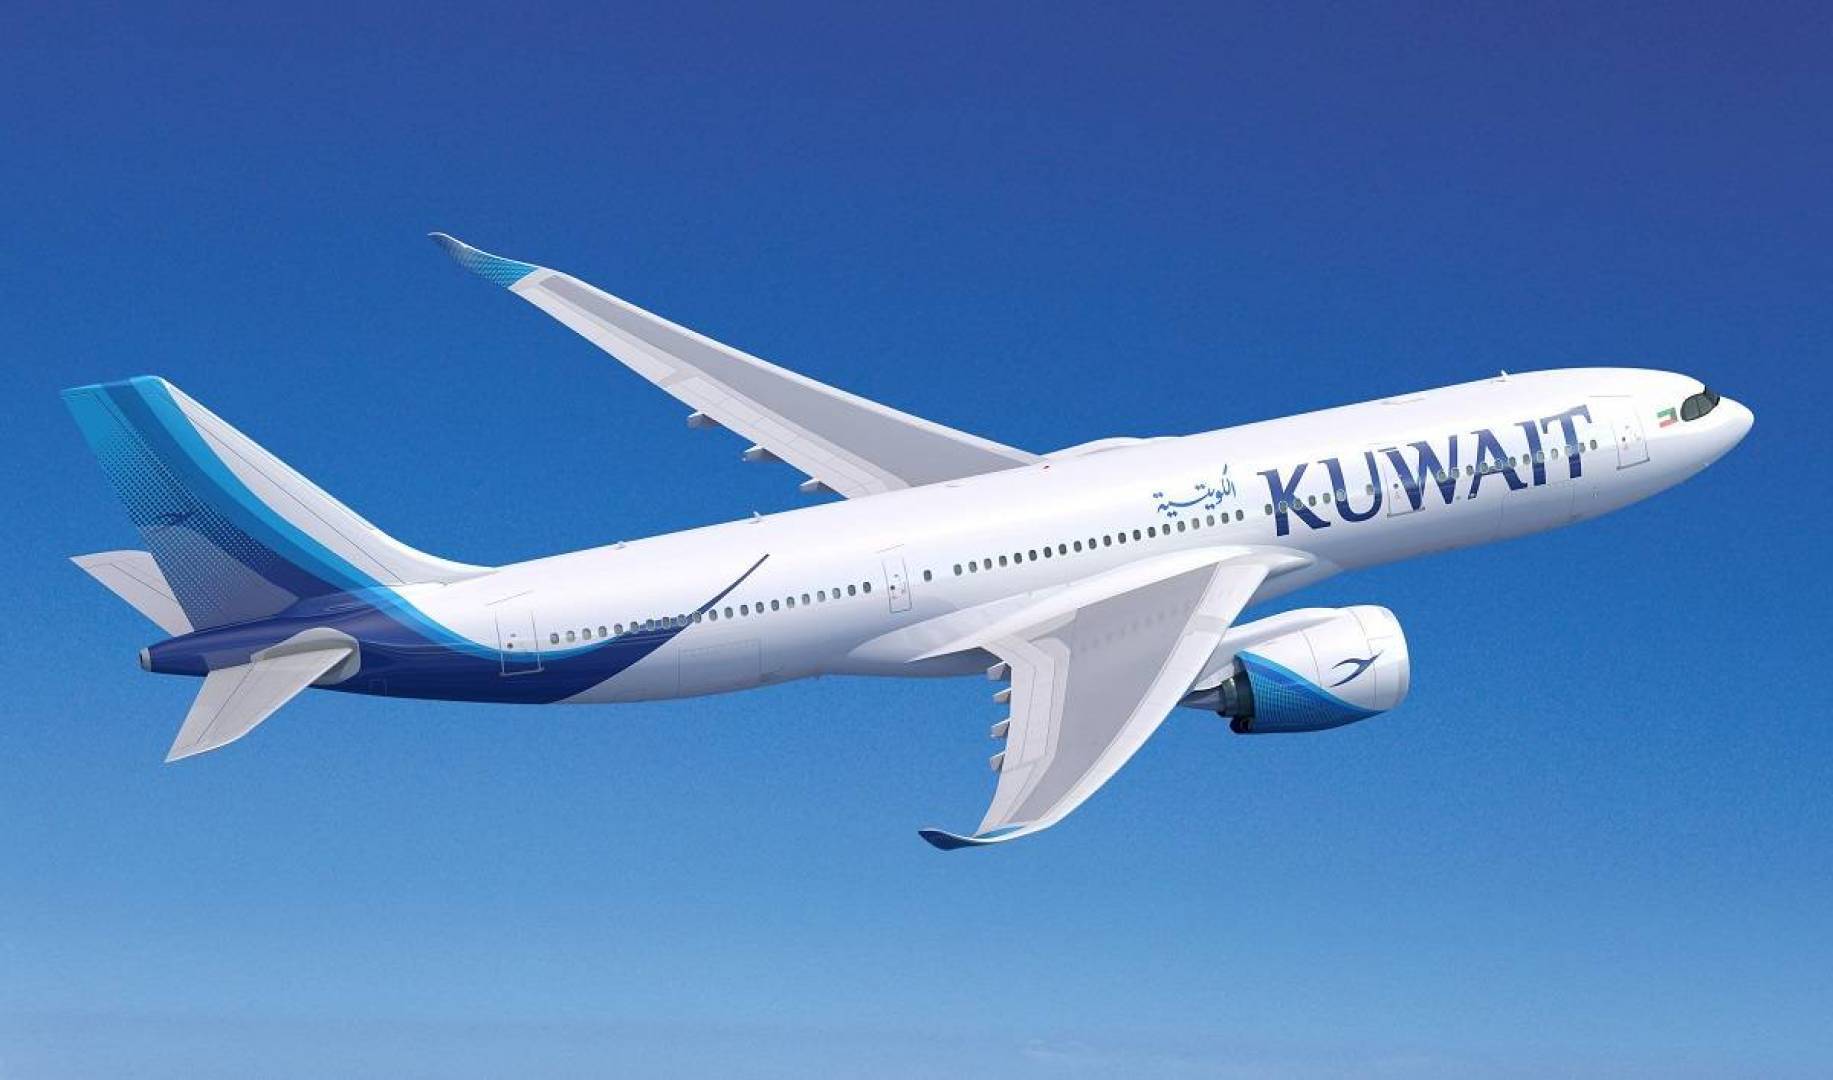 وظائف حكومية الخطوط الجوية الكويتية تعلن عن فتح باب التقديم لعدد من التخصصات بتاريخ 2-11-2022